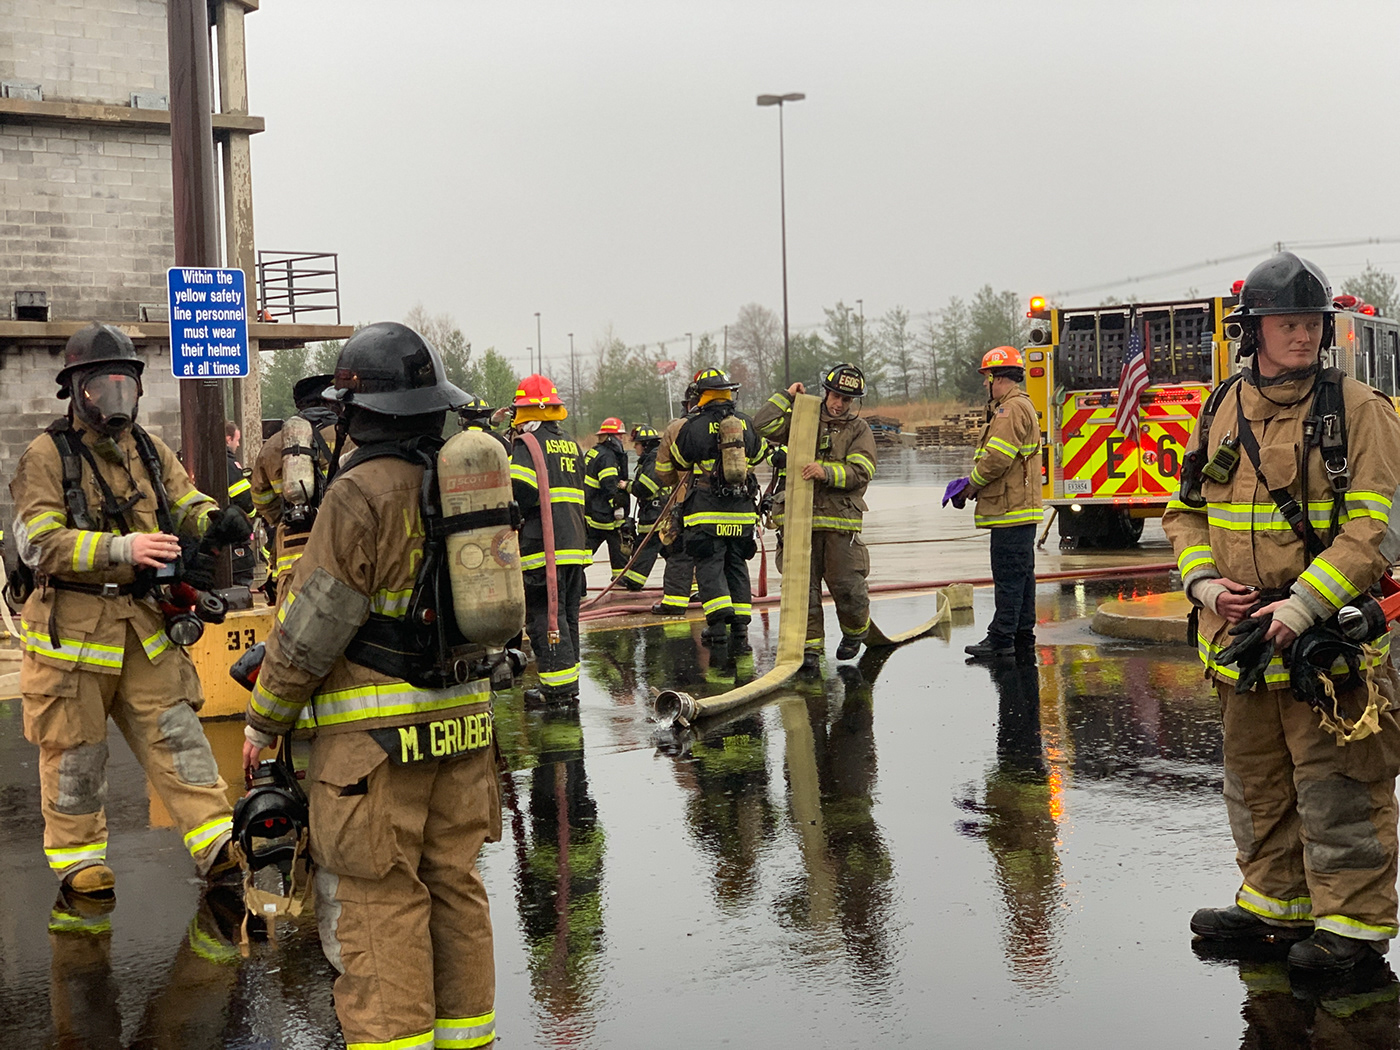 Firefighter fireman firefighting Firetruck rescue firefighters water firedepartment hose training center